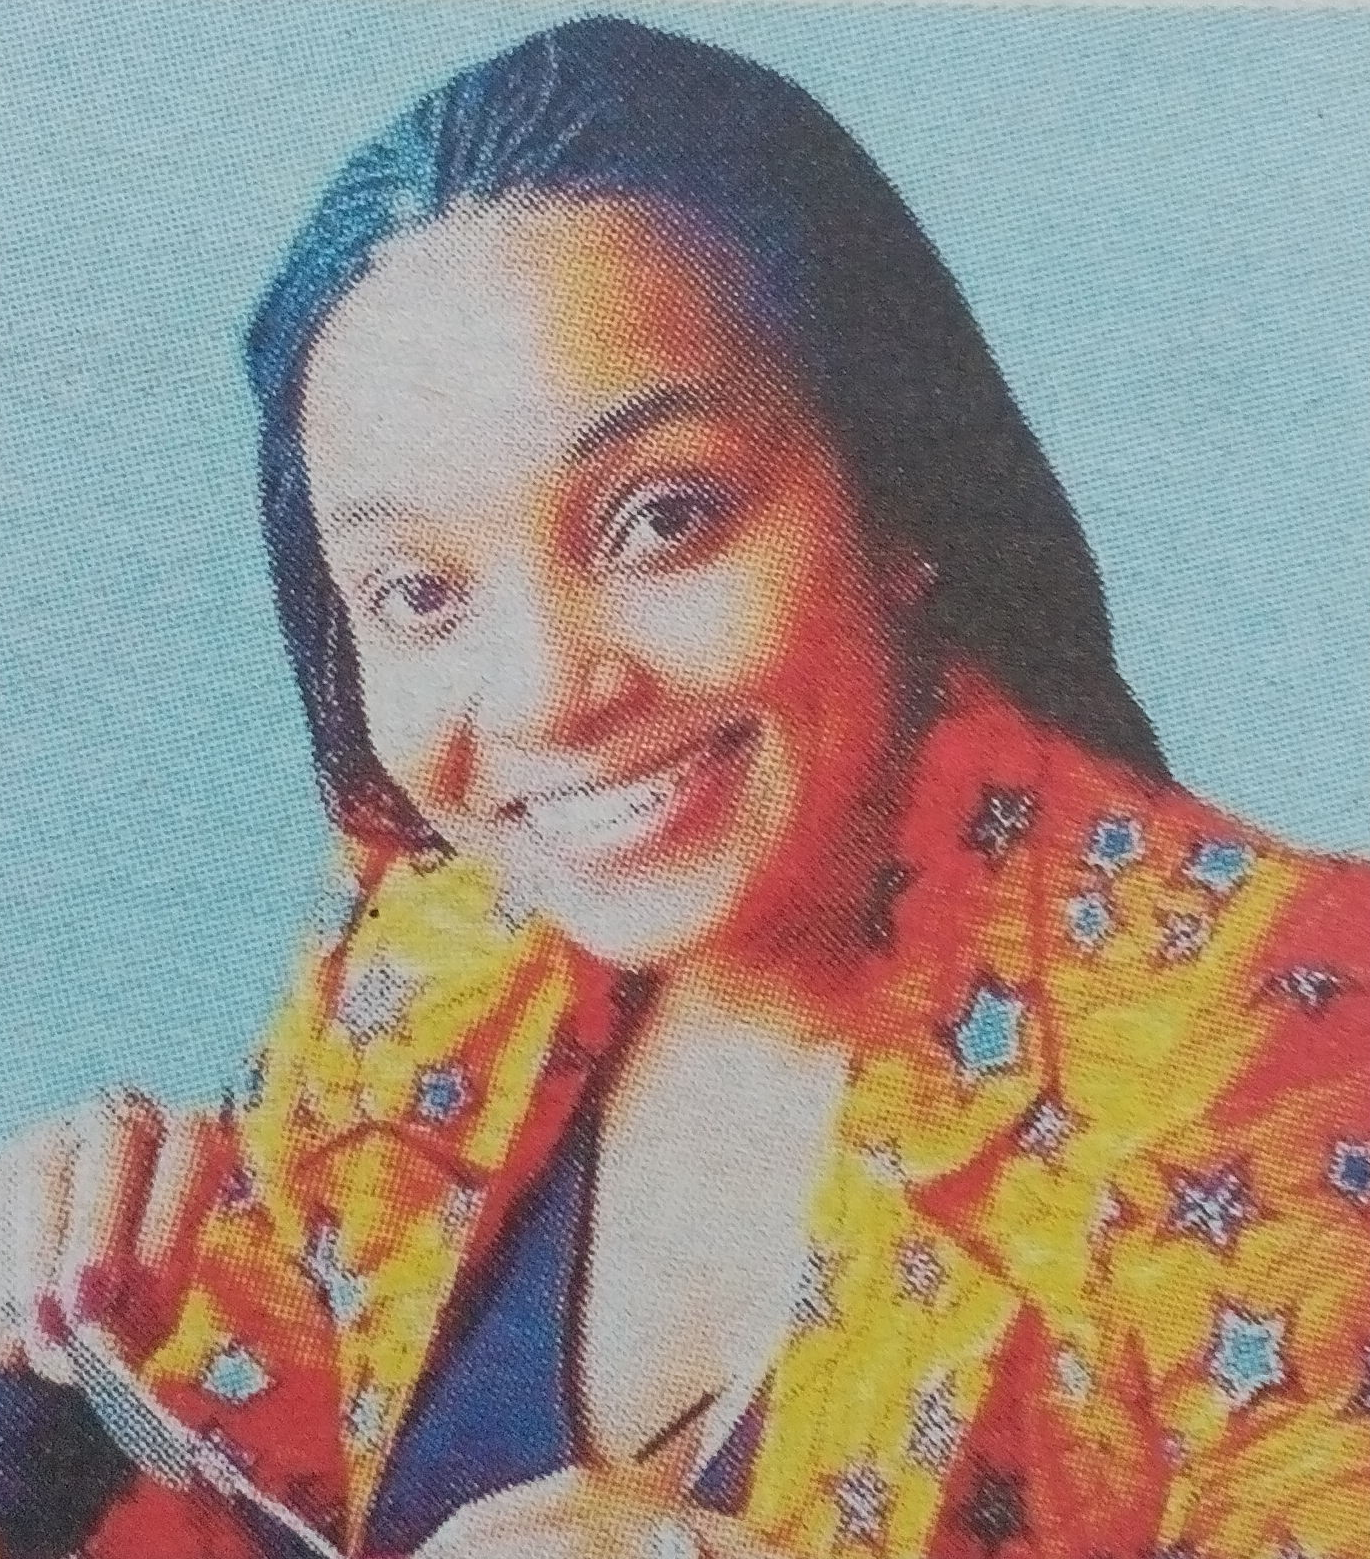 Obituary Image of Rahab Wanjugu Kamande (Rae)